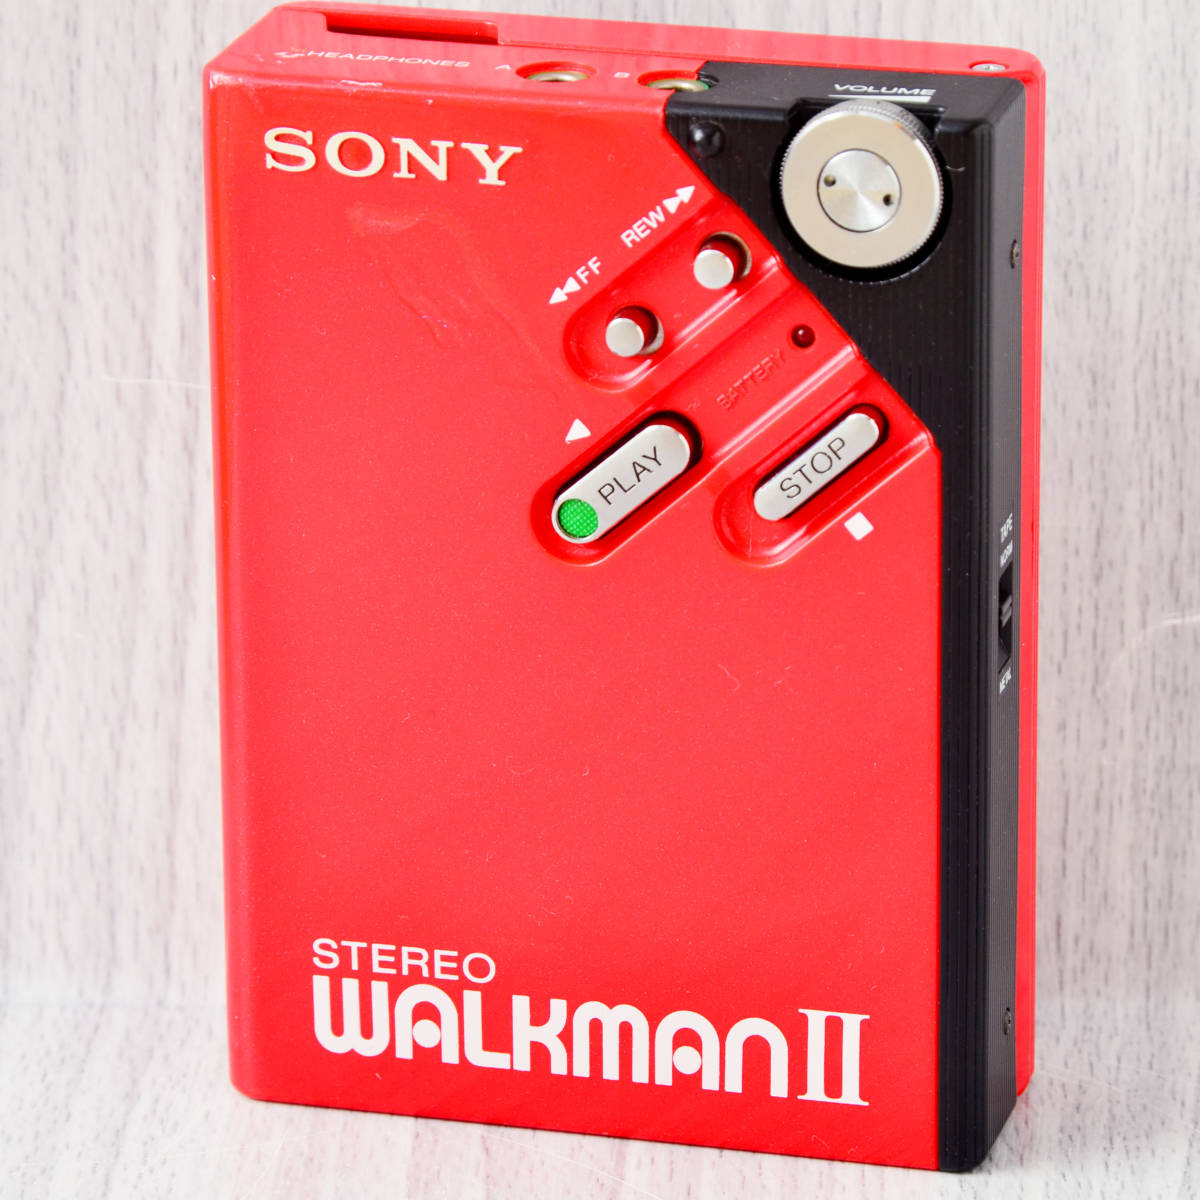 【ゆうゆうメ】 美品! SONY WALKMAN WM-2 赤 カセットウォークマン ケース付 カセットウ